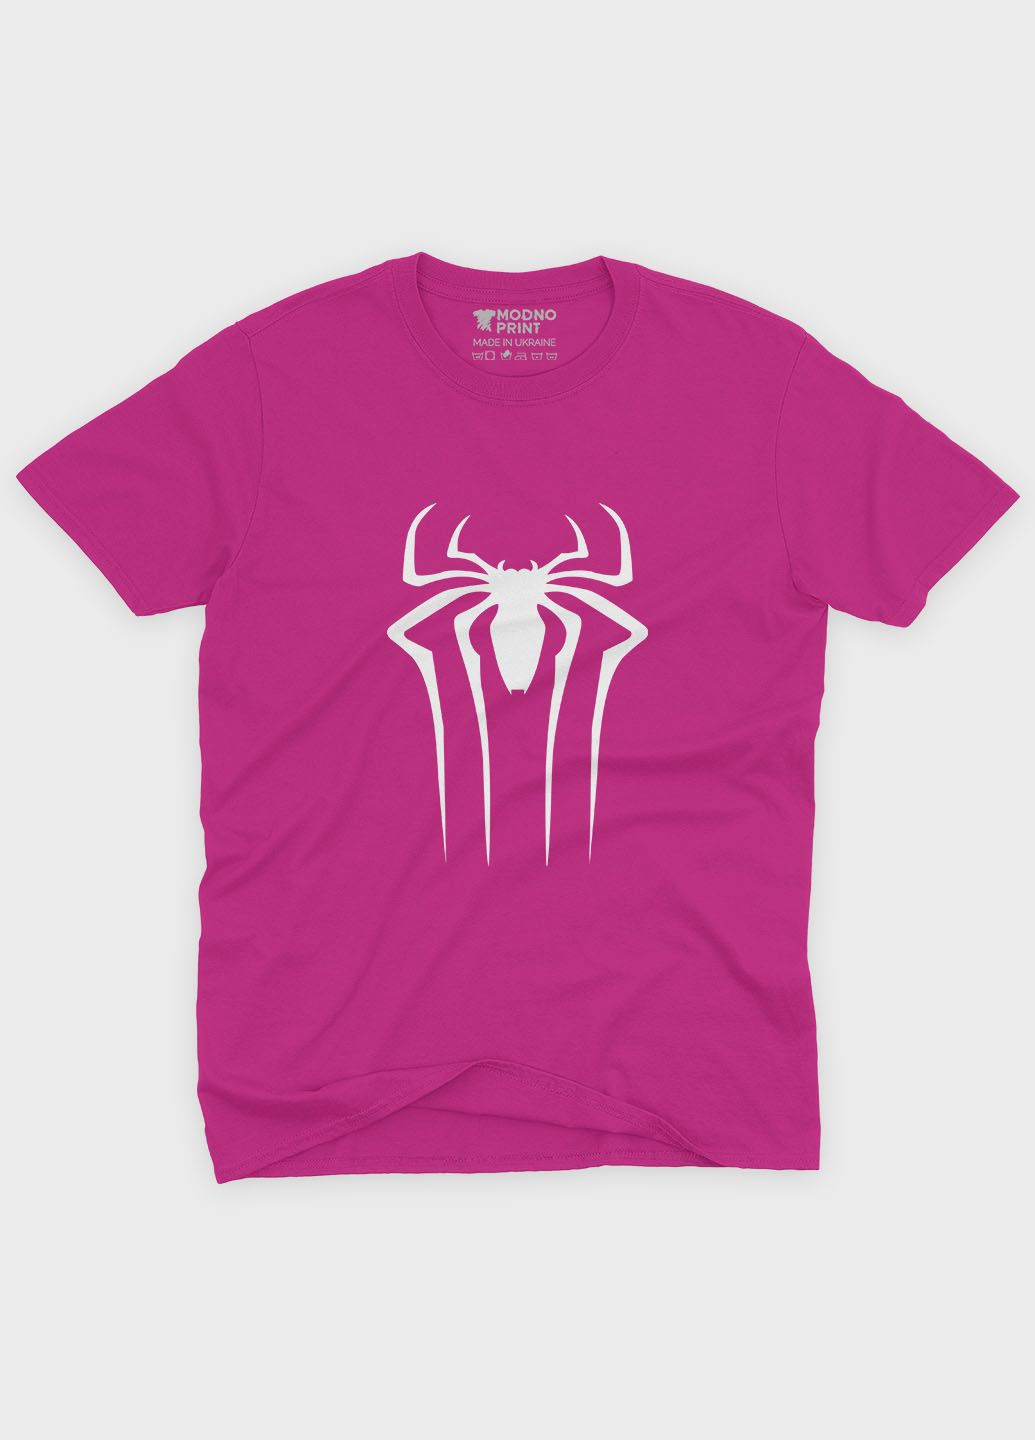 Рожева демісезонна футболка для дівчинки з принтом супергероя - людина-павук (ts001-1-fuxj-006-014-107-g) Modno